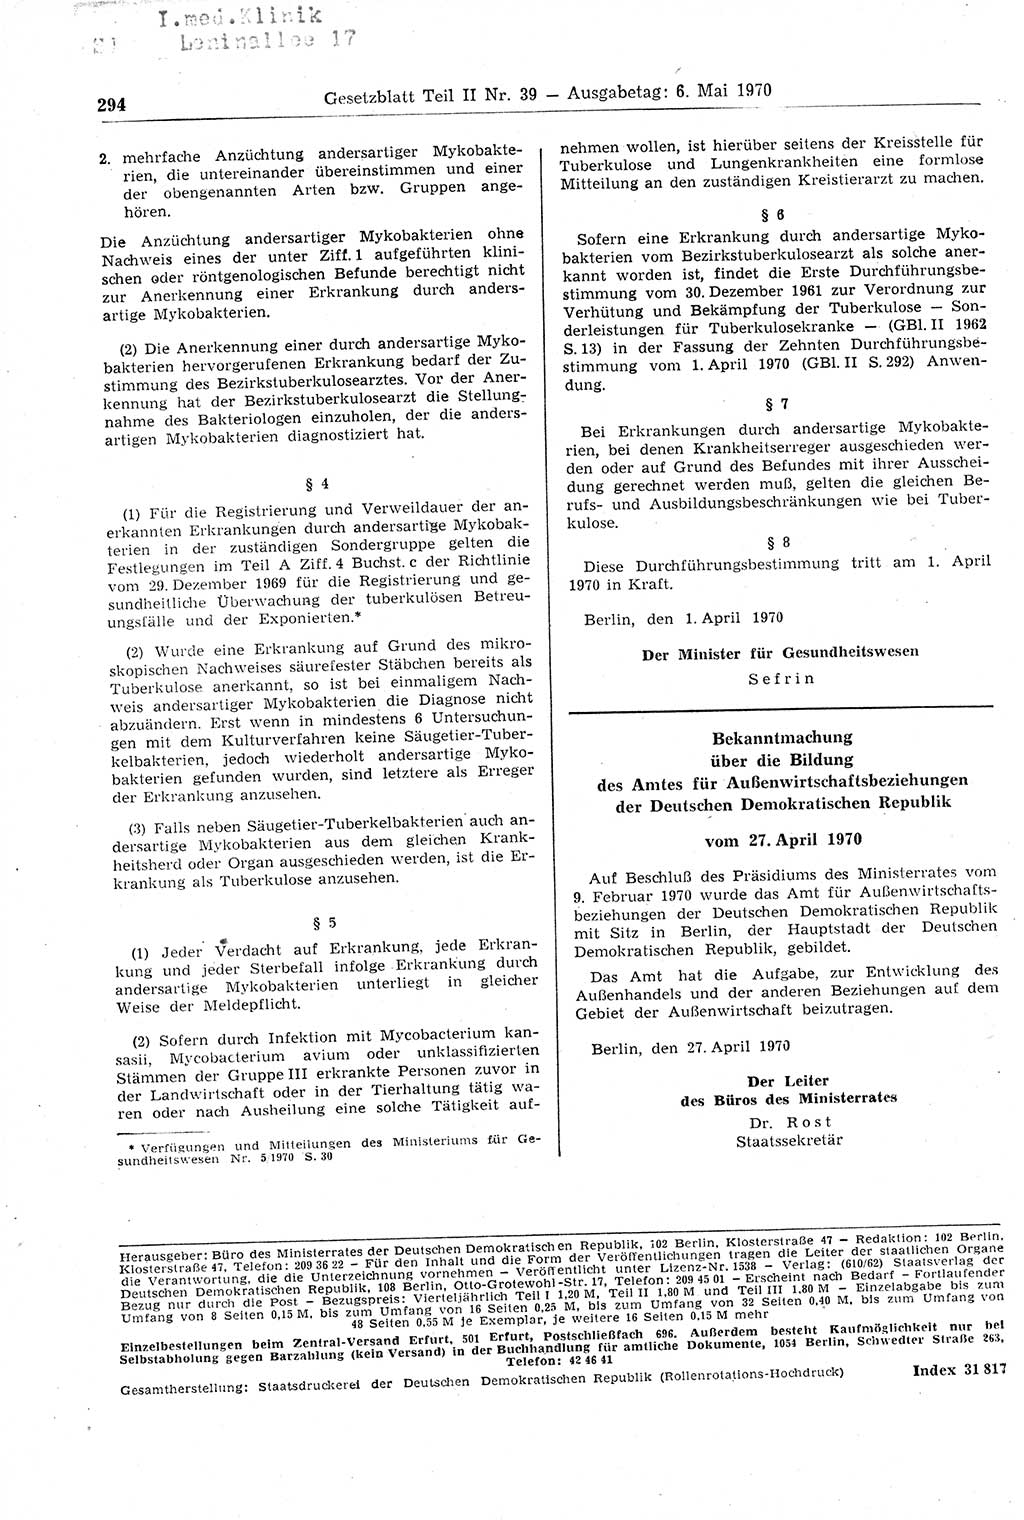 Gesetzblatt (GBl.) der Deutschen Demokratischen Republik (DDR) Teil ⅠⅠ 1970, Seite 294 (GBl. DDR ⅠⅠ 1970, S. 294)